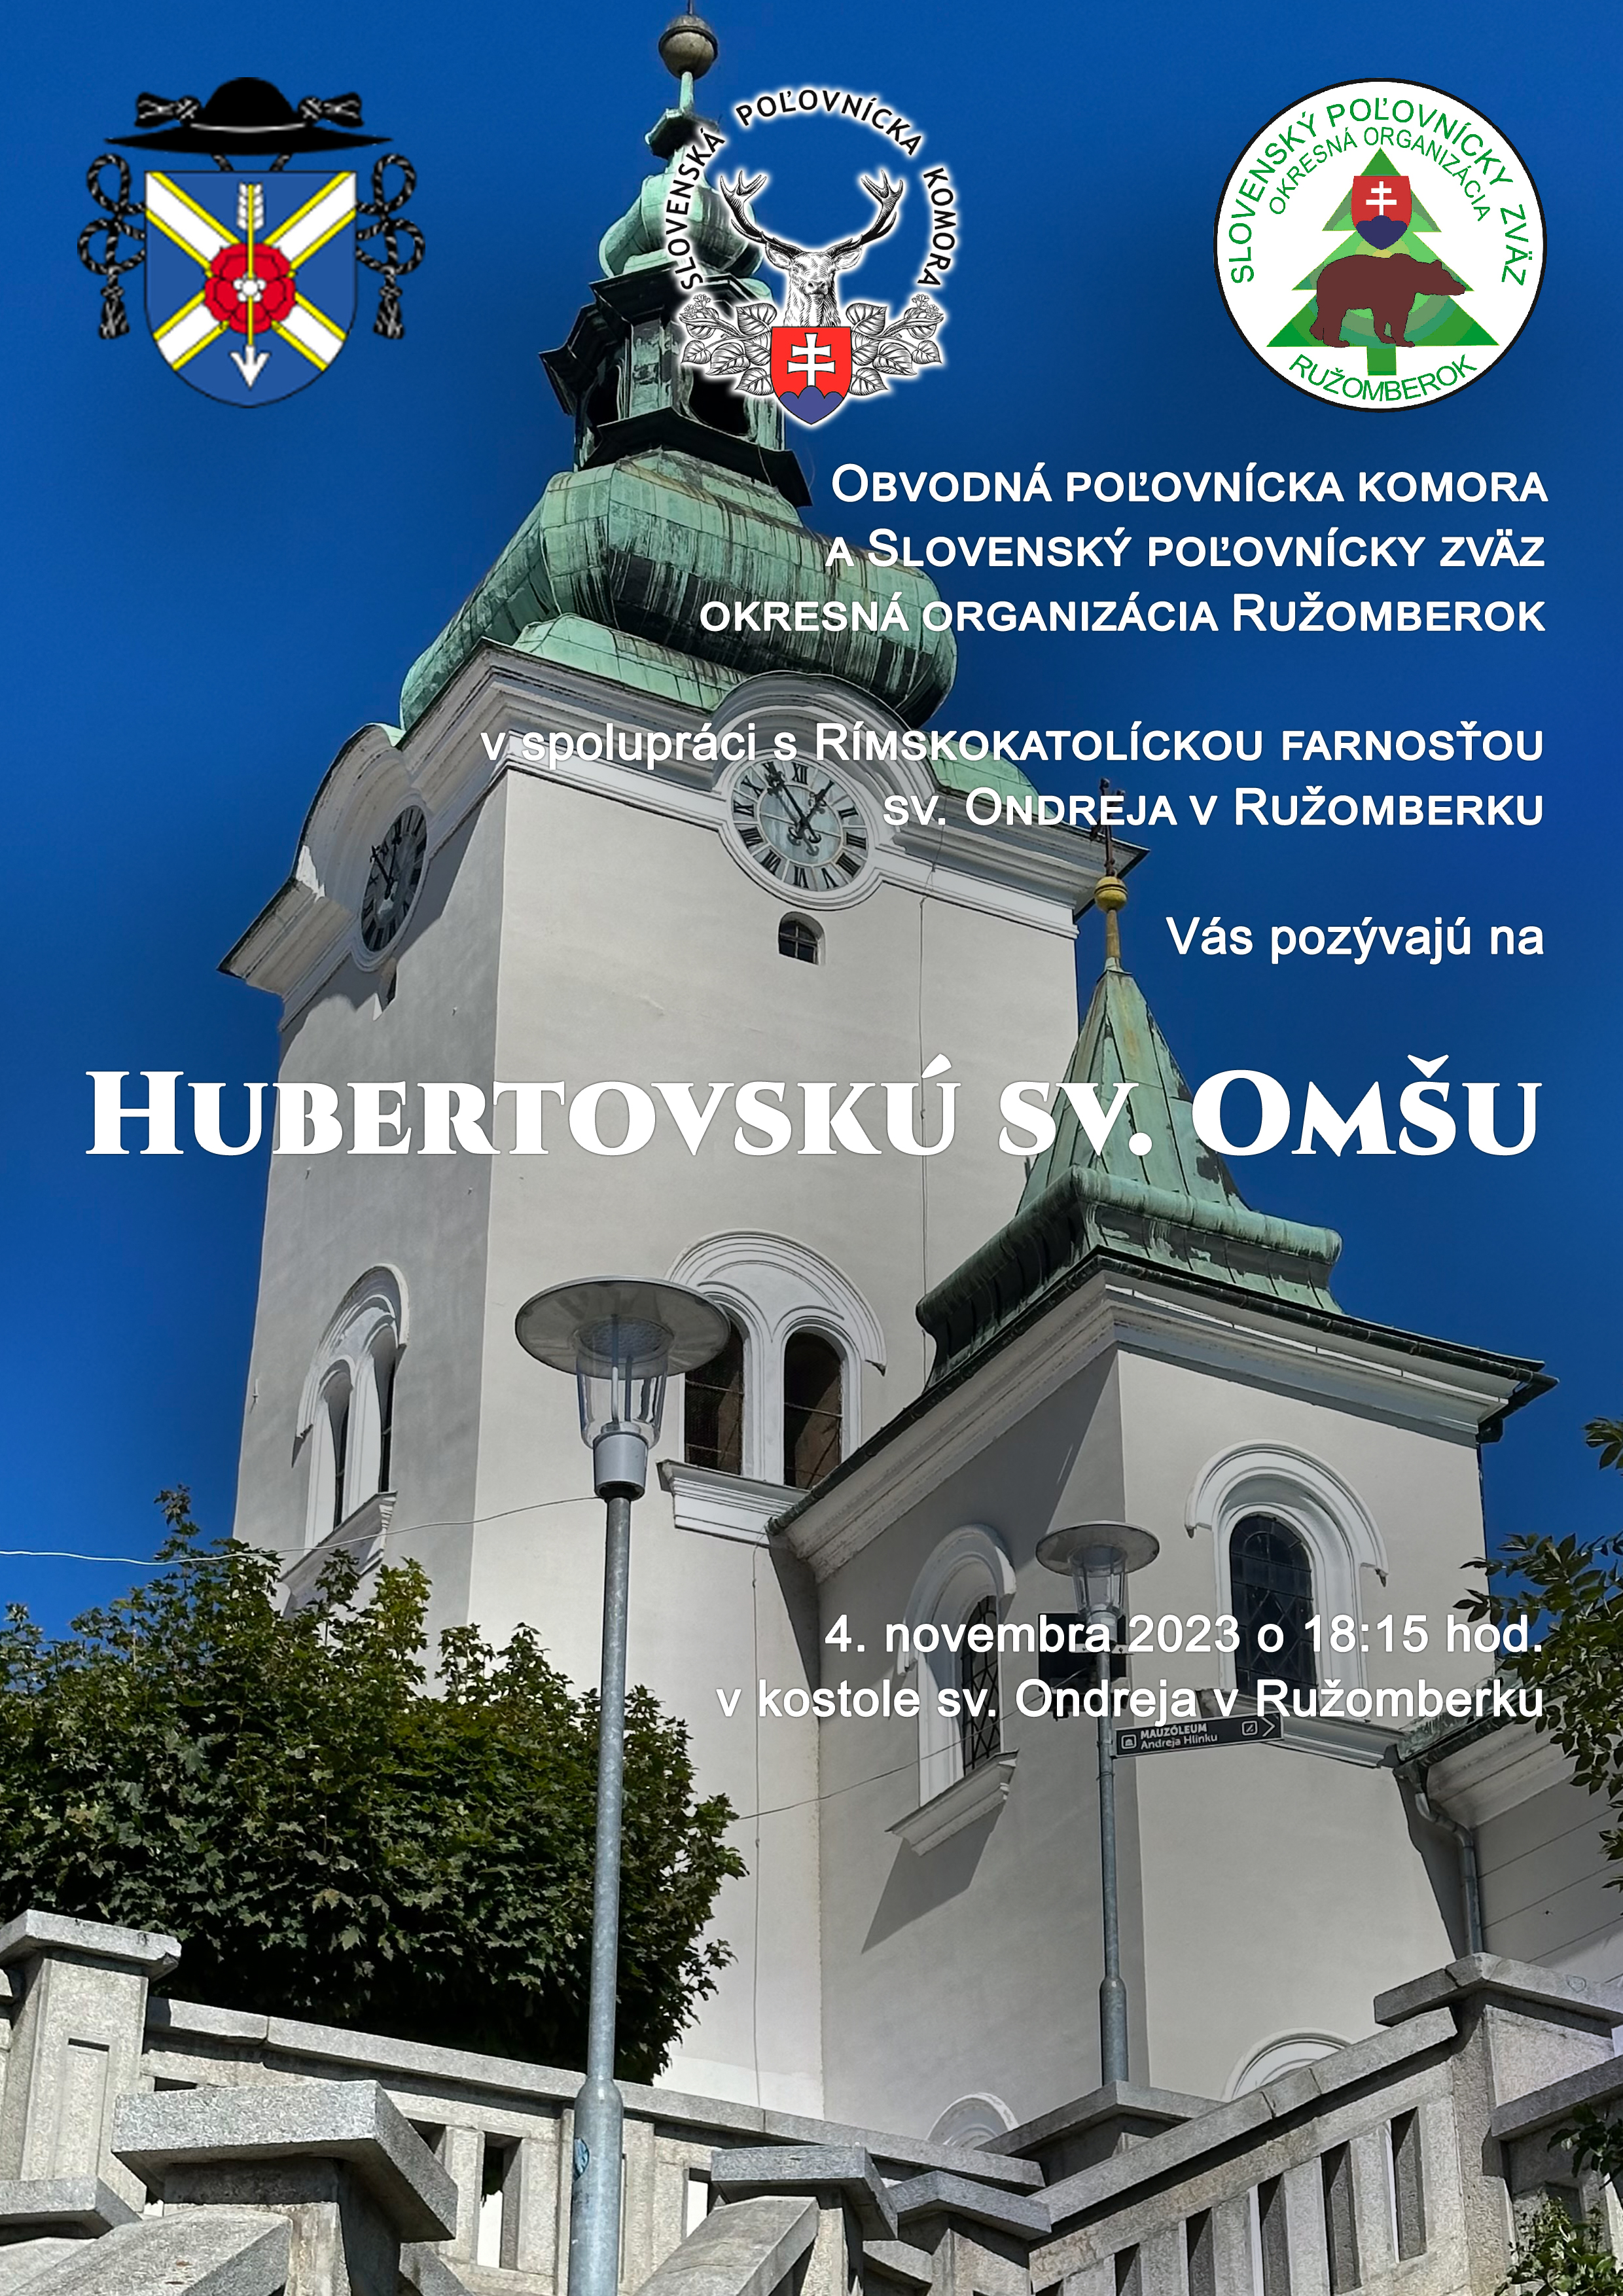 Hubertovská sv. Omša